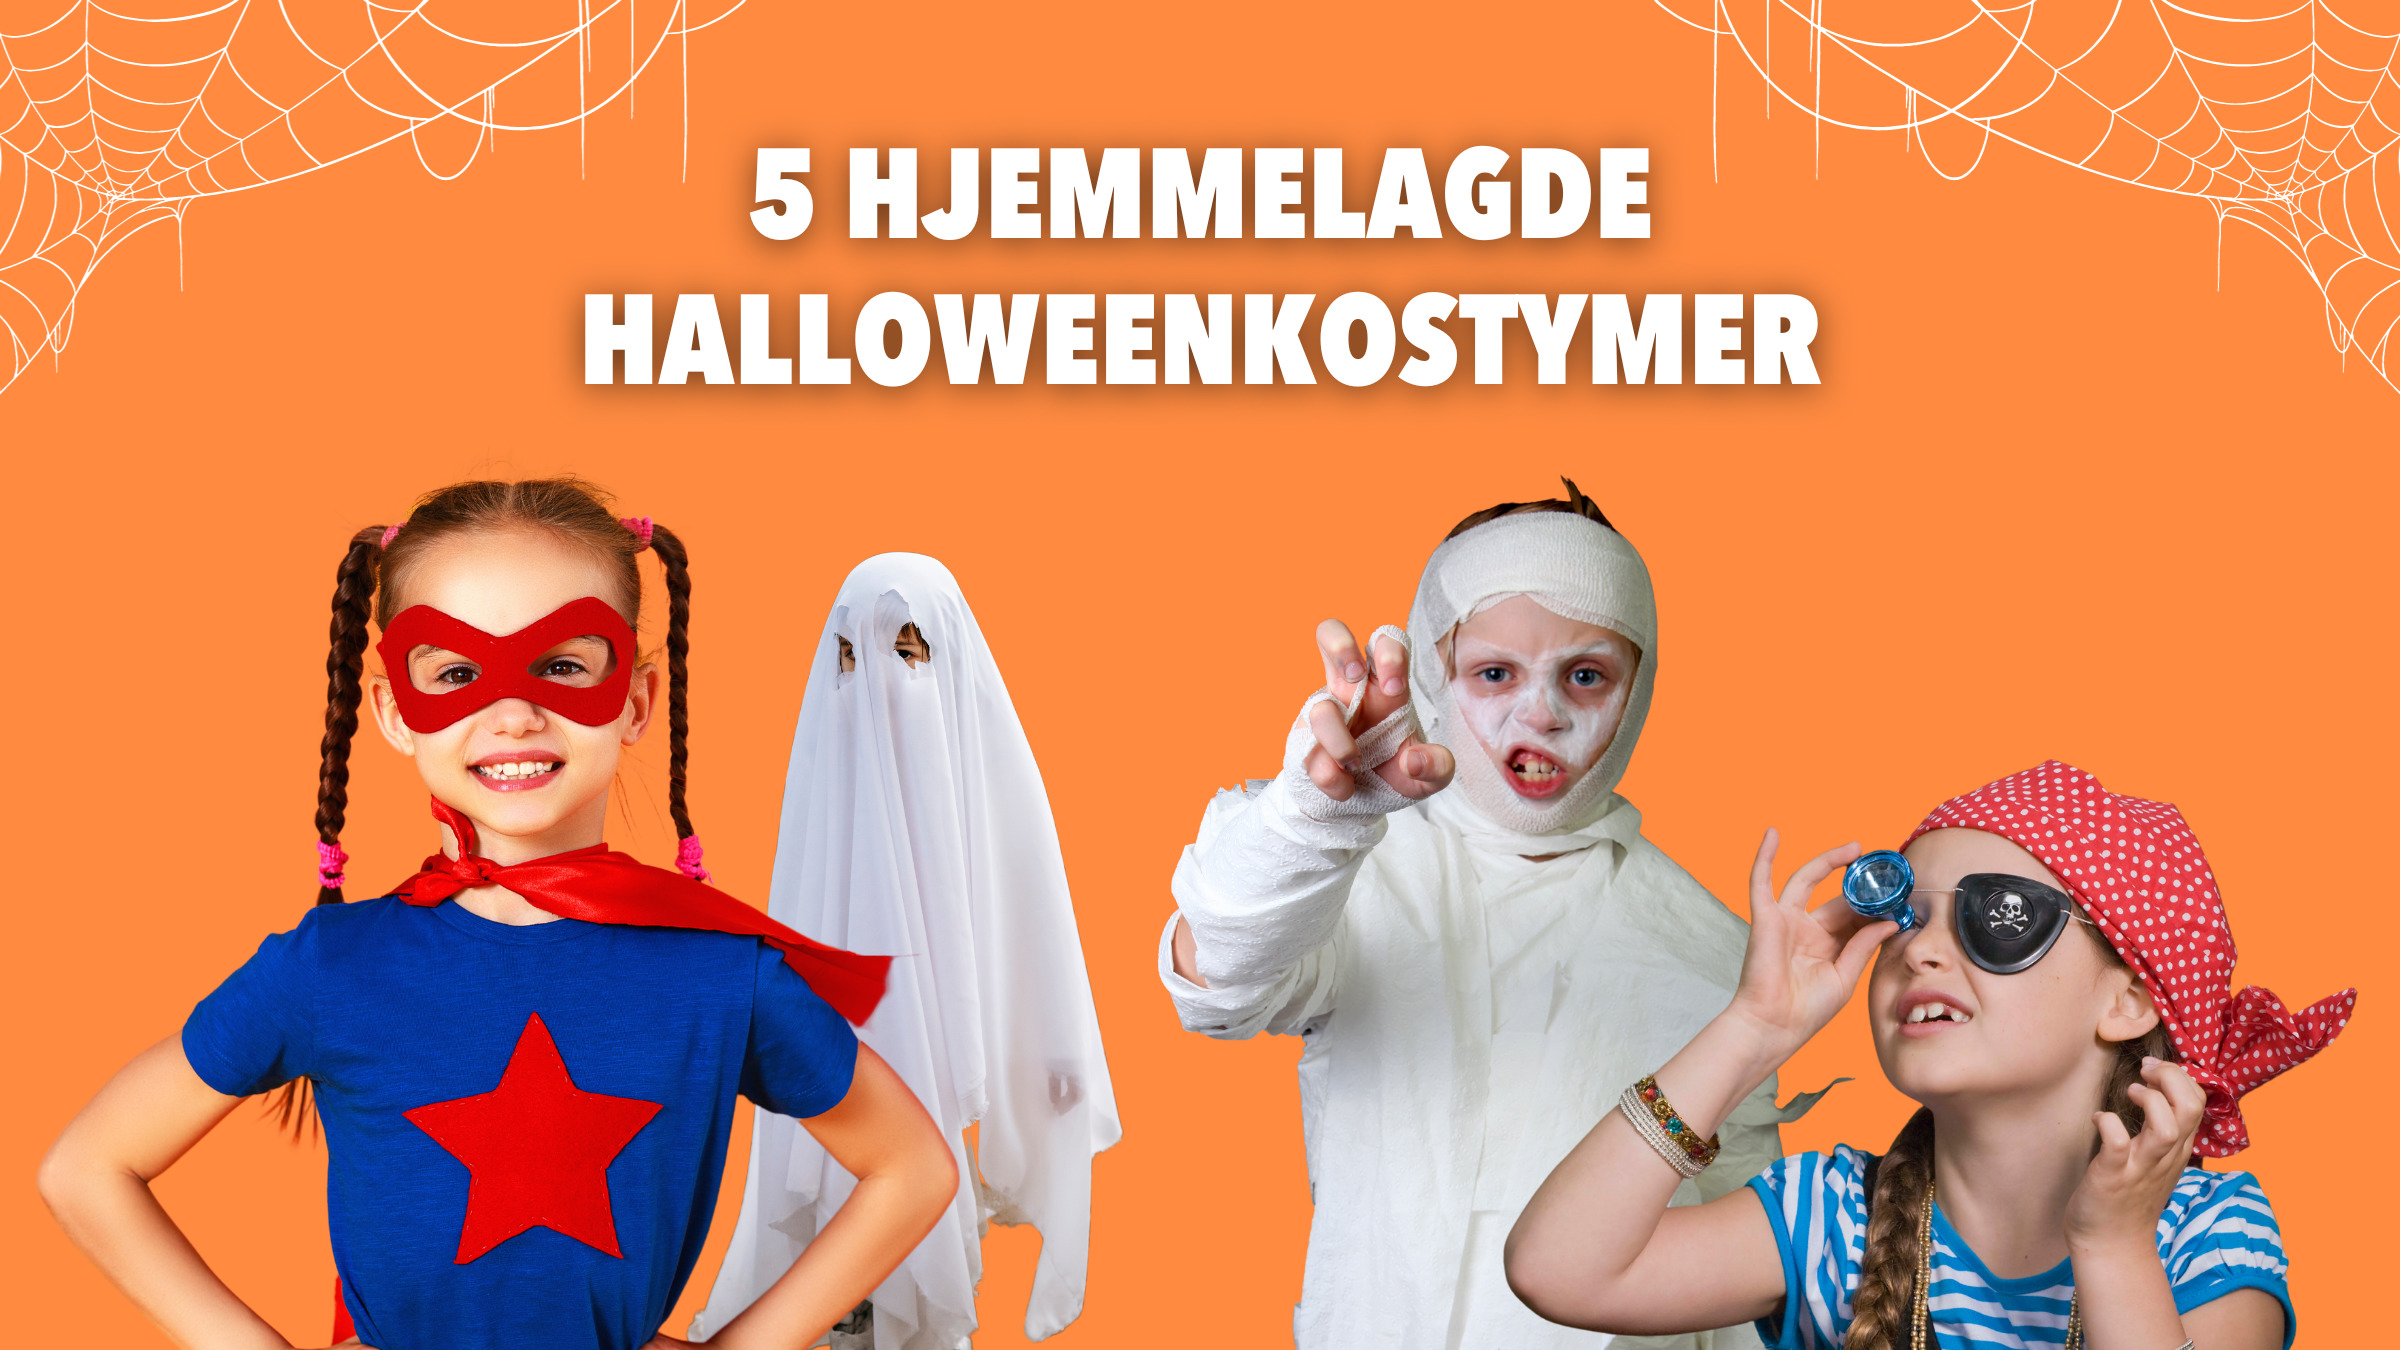 5 hjemmelagde halloweenkostymer